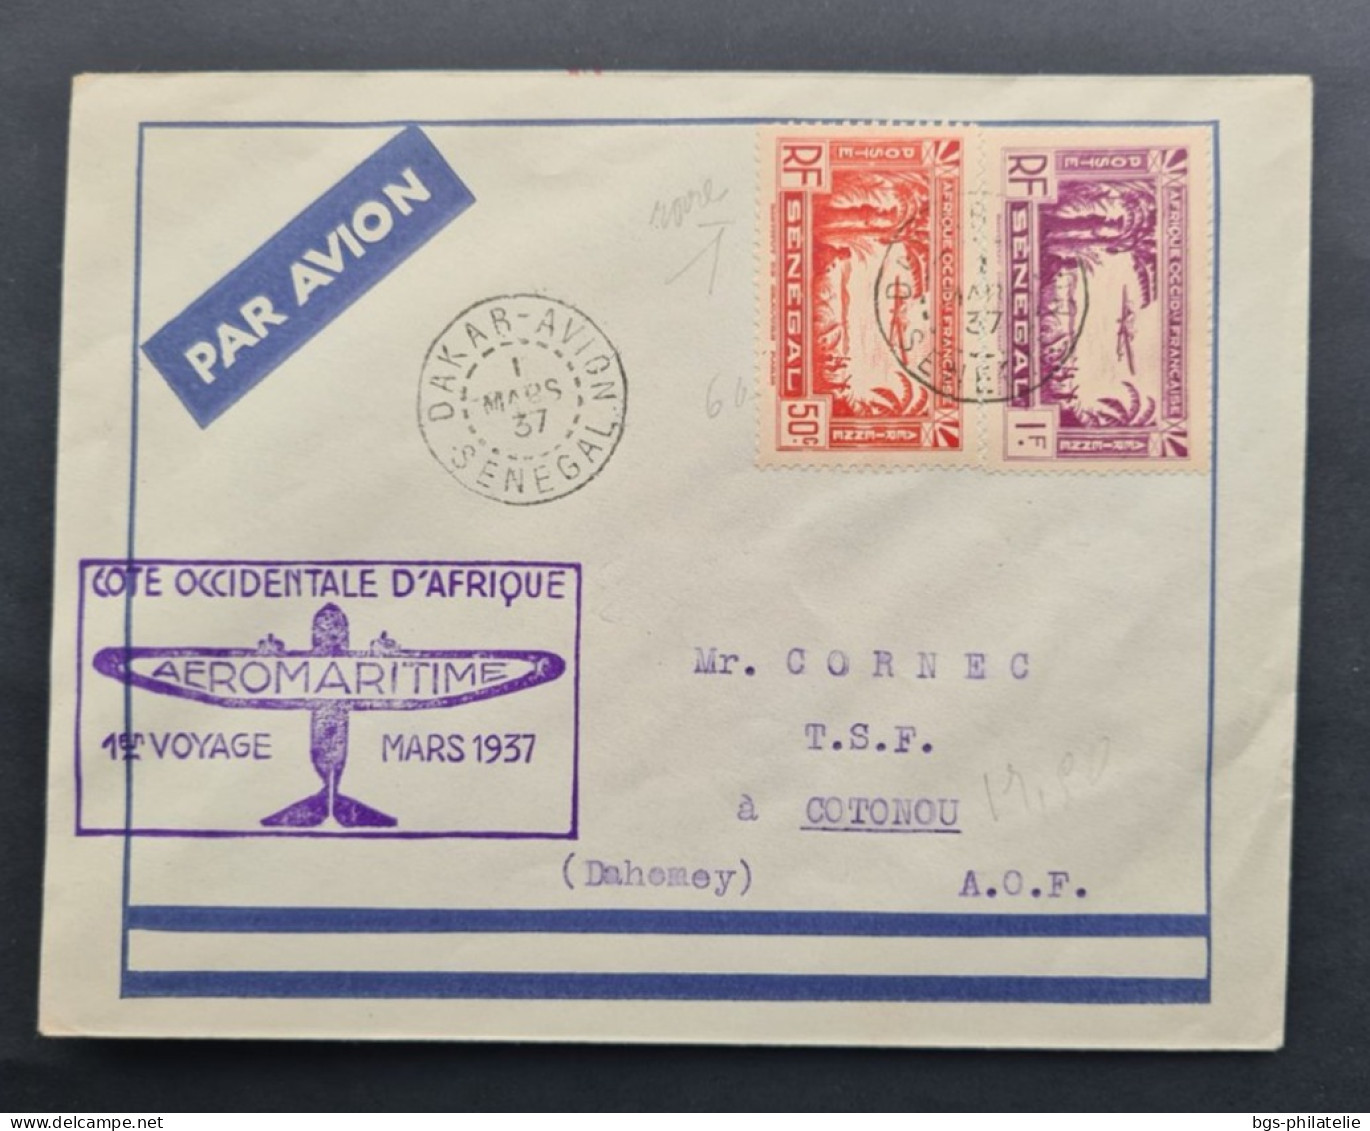 SÉNÉGAL,  Timbres Numéros PA2 Et PA3 Sur Lettre Avec Griffe Aéromaritime Cote Occidentale D'Afrique 1er Voyage Mars 1937 - Storia Postale